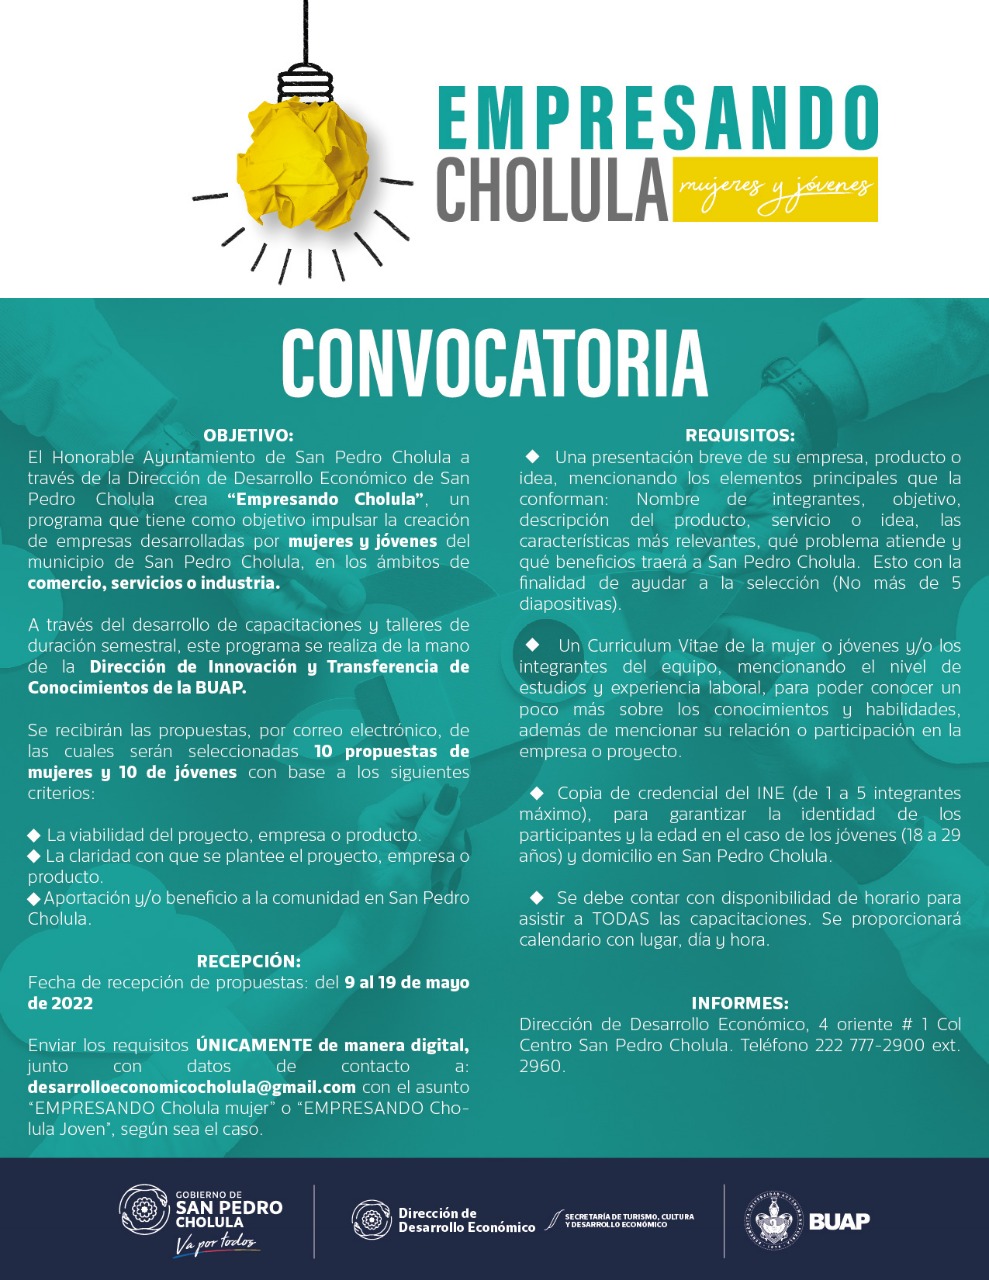 Paola Angon lanza “Empresando Cholula”, programa de apoyo a emprendedores en San Pedro